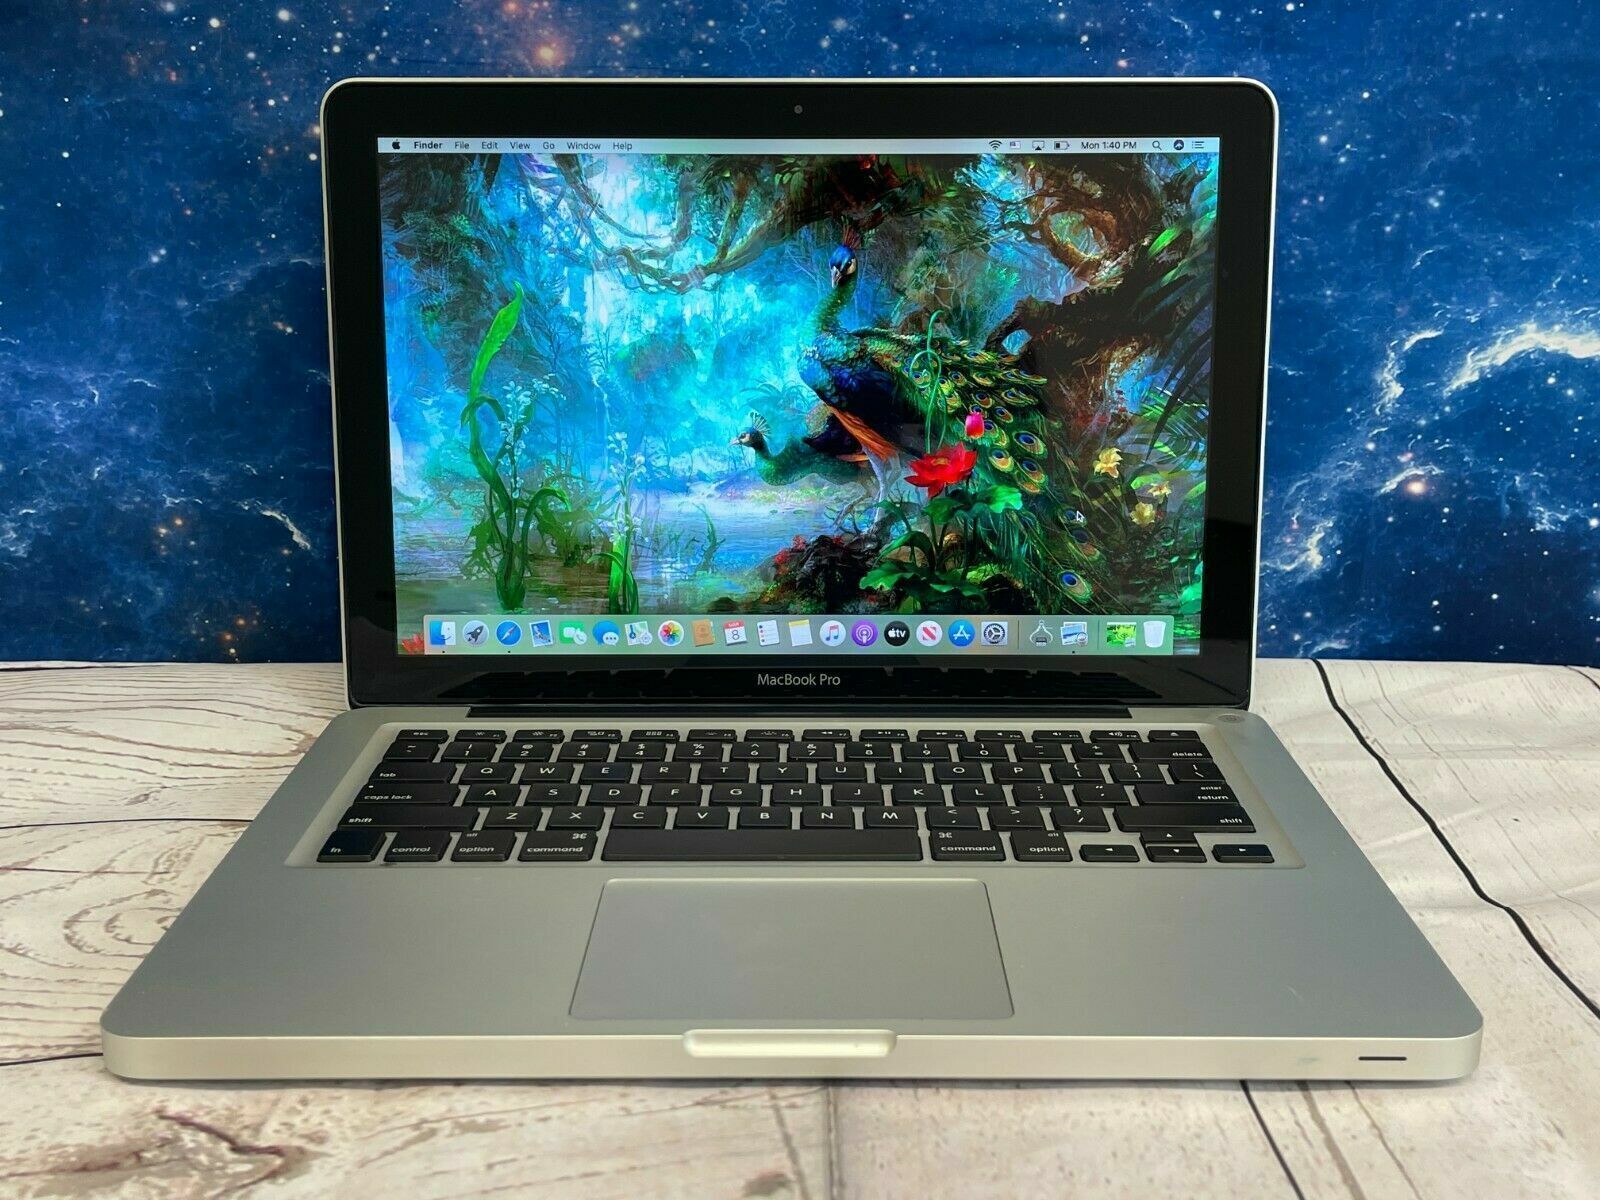 Apple MacBook Pro MD101LL/A Intel Core i5-3210M X2 2.5GHz 4GB 